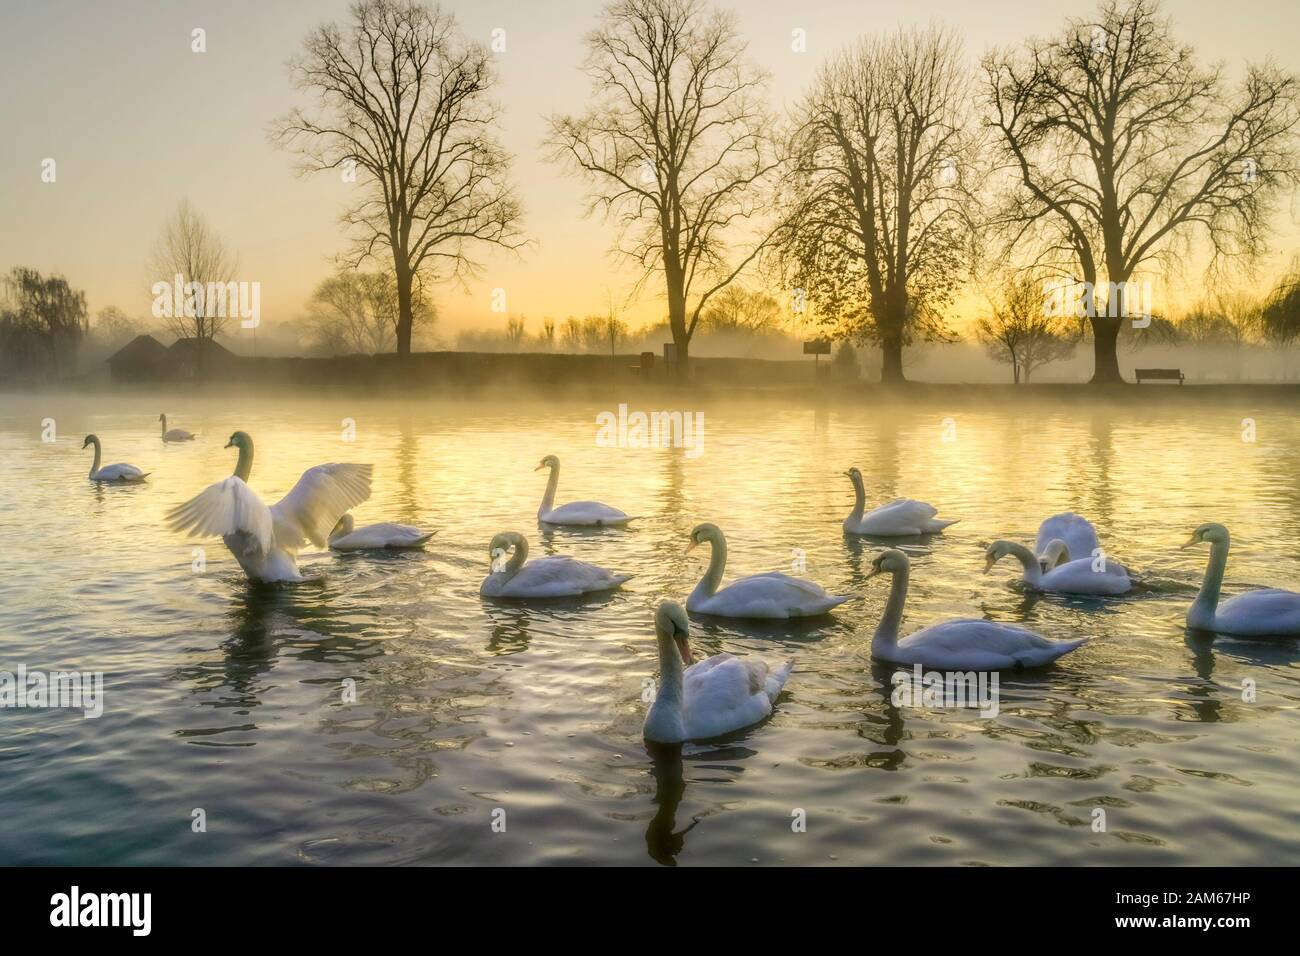 Swans at dawn, Avon river, Stratford upon Avon, Warwickshire, England, UK Stock Photo